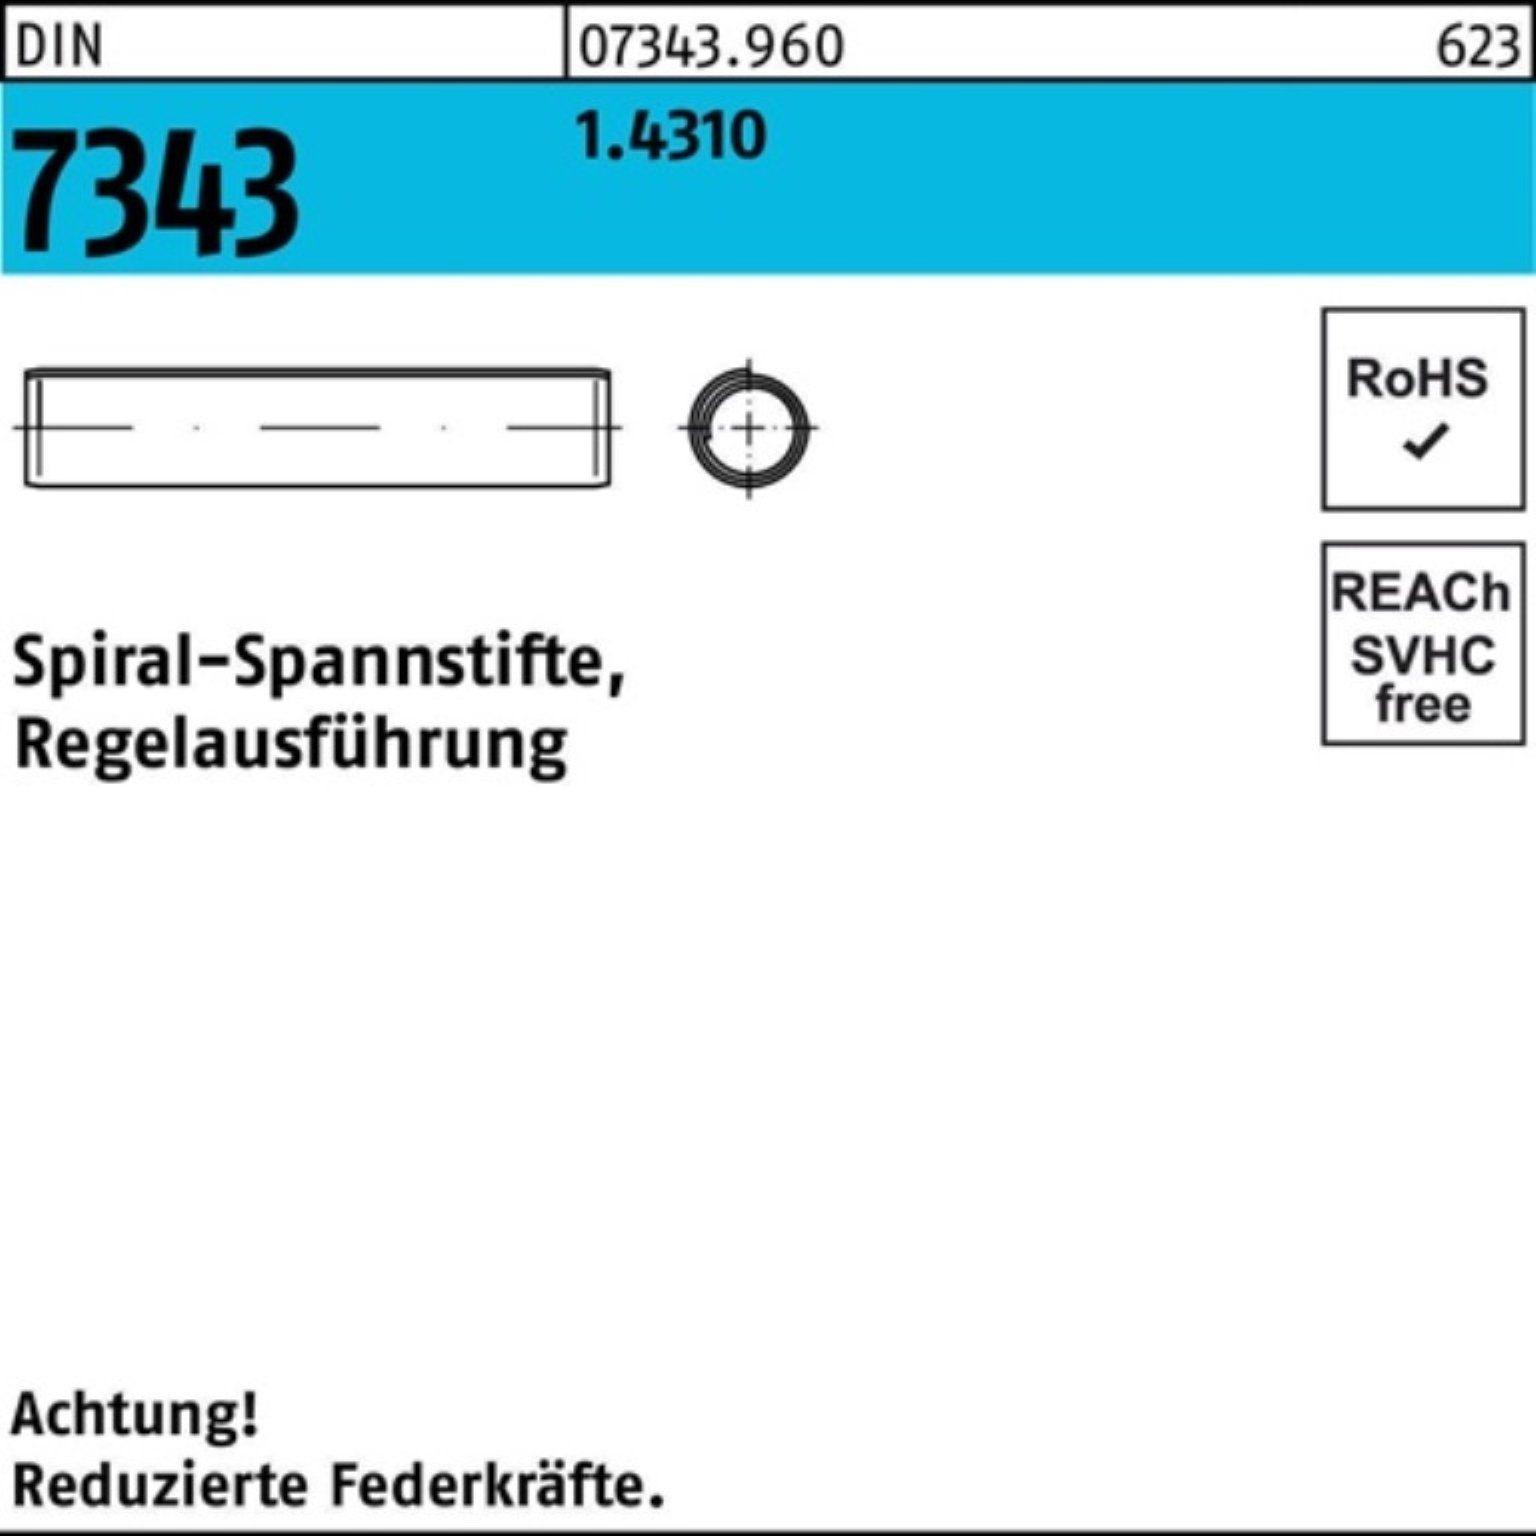 Reyher Spannstift 1000er Pack DIN 1,5x 1.4310 Regelausf 7343/ISO 6 8750 Spiralspannstift